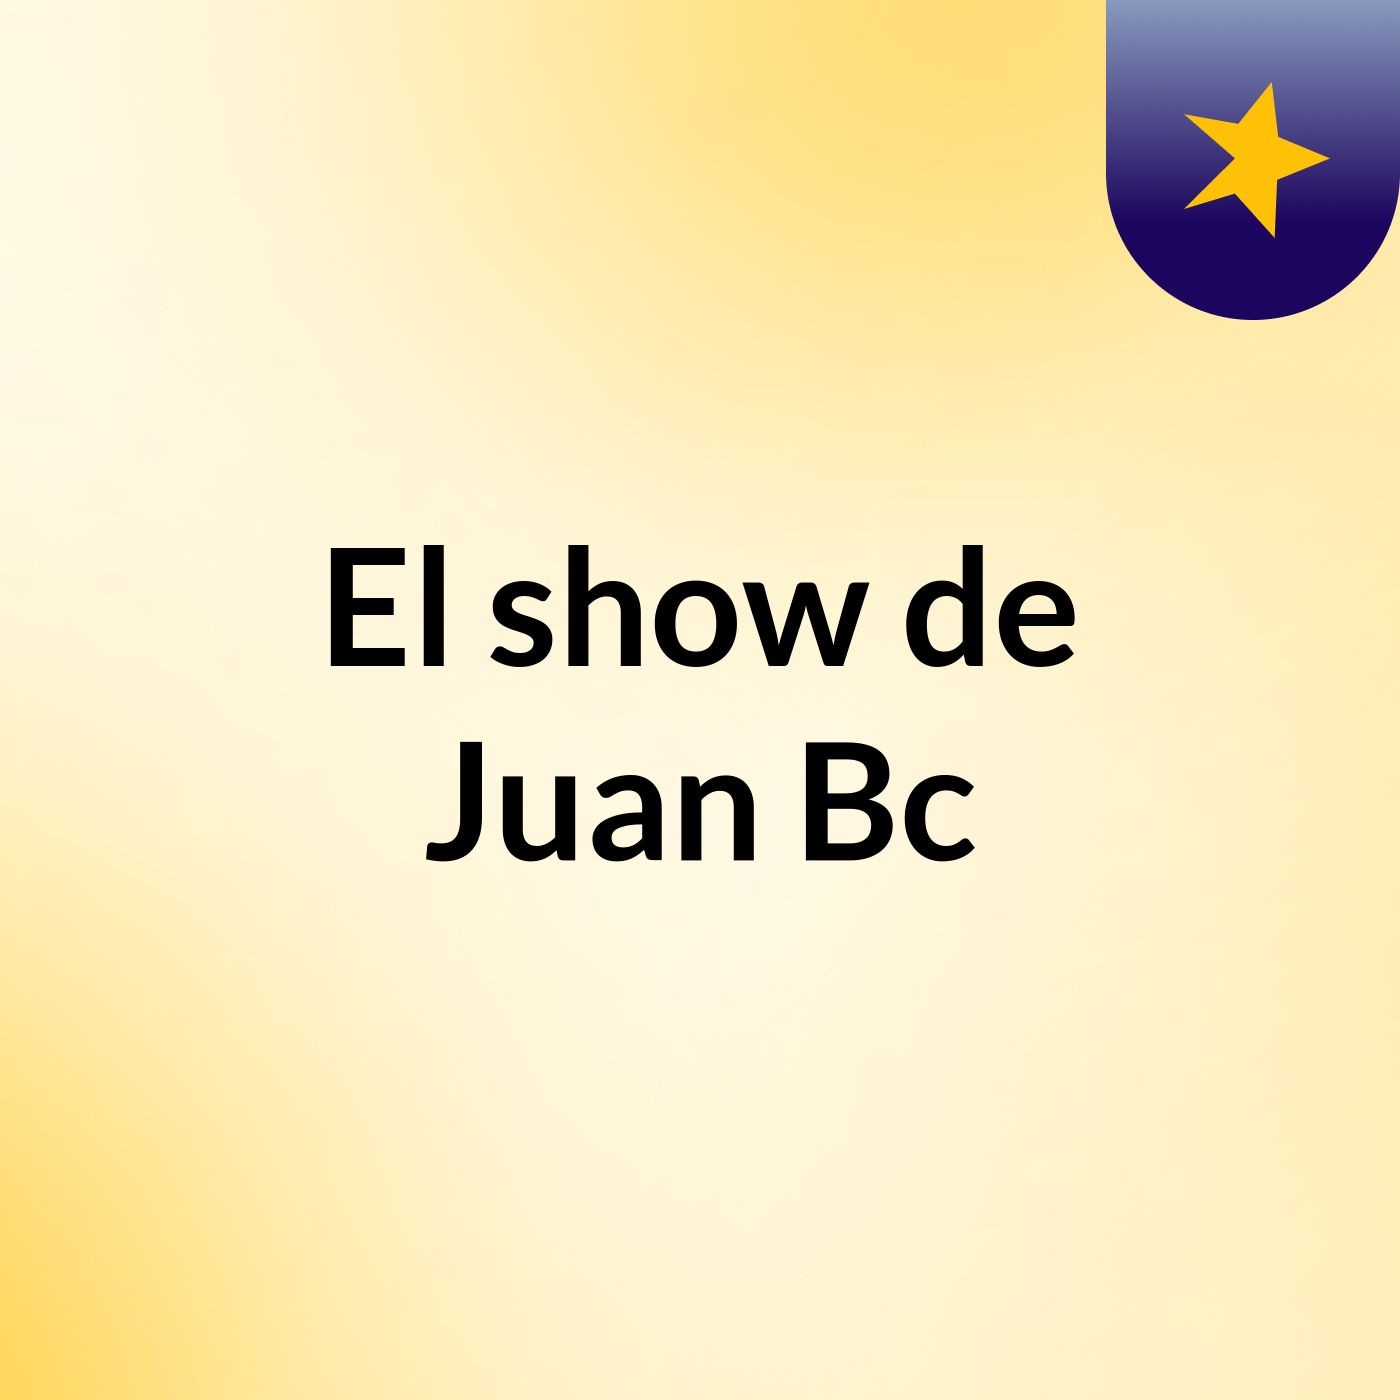 Episodio 5 - El show de Juan Bc